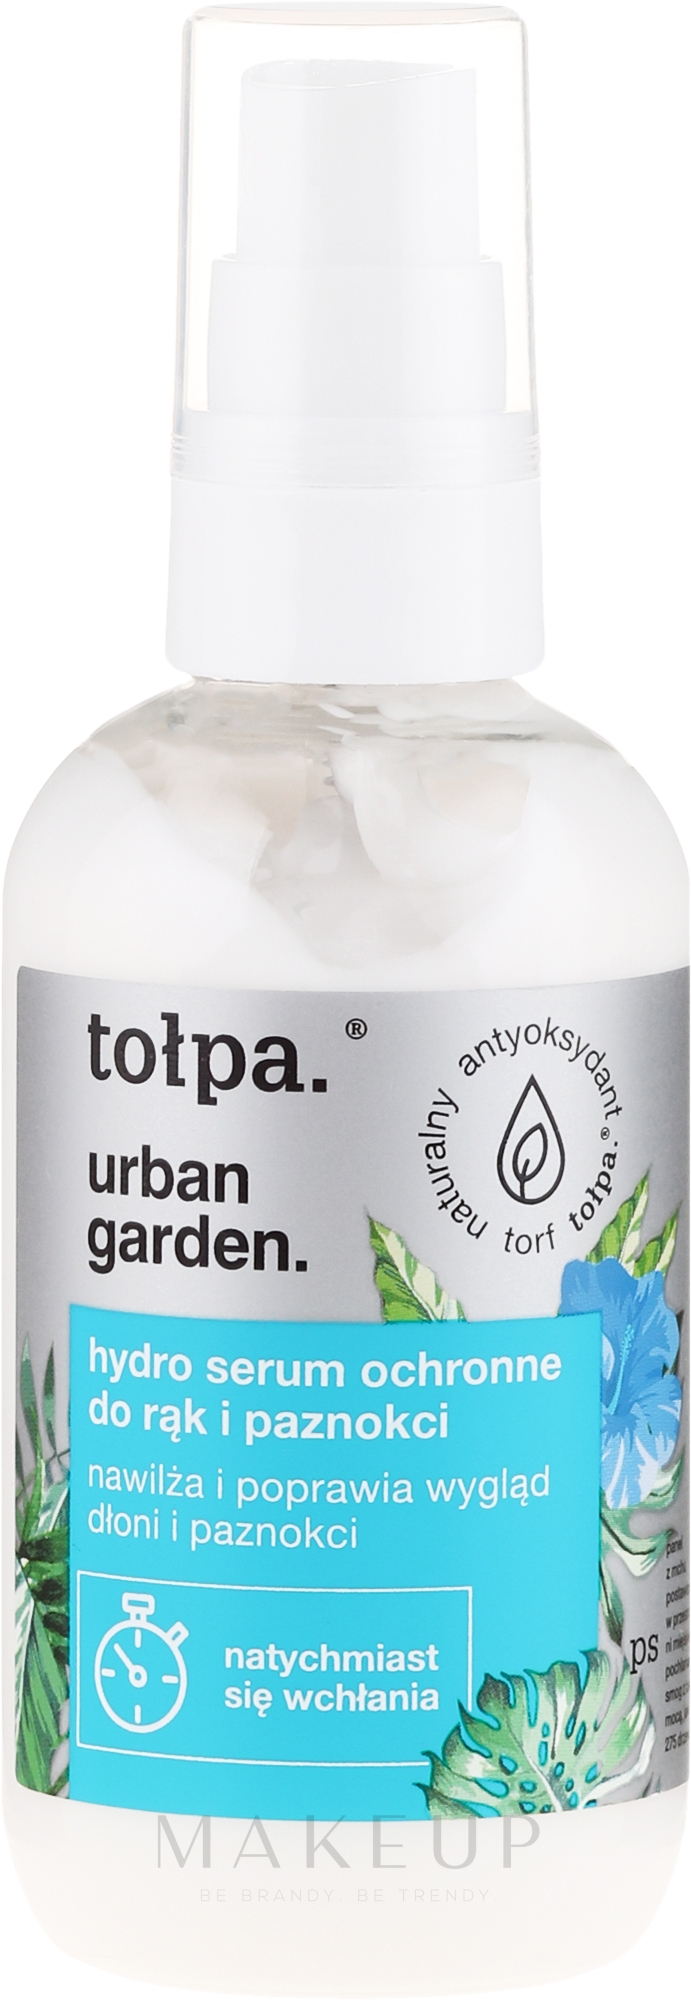 Feuchtigkeitsspendendes und schützendes Hand- und Nagelserum - Tolpa Urban Garden Hand & Nail Hydro Serum — Foto 100 ml